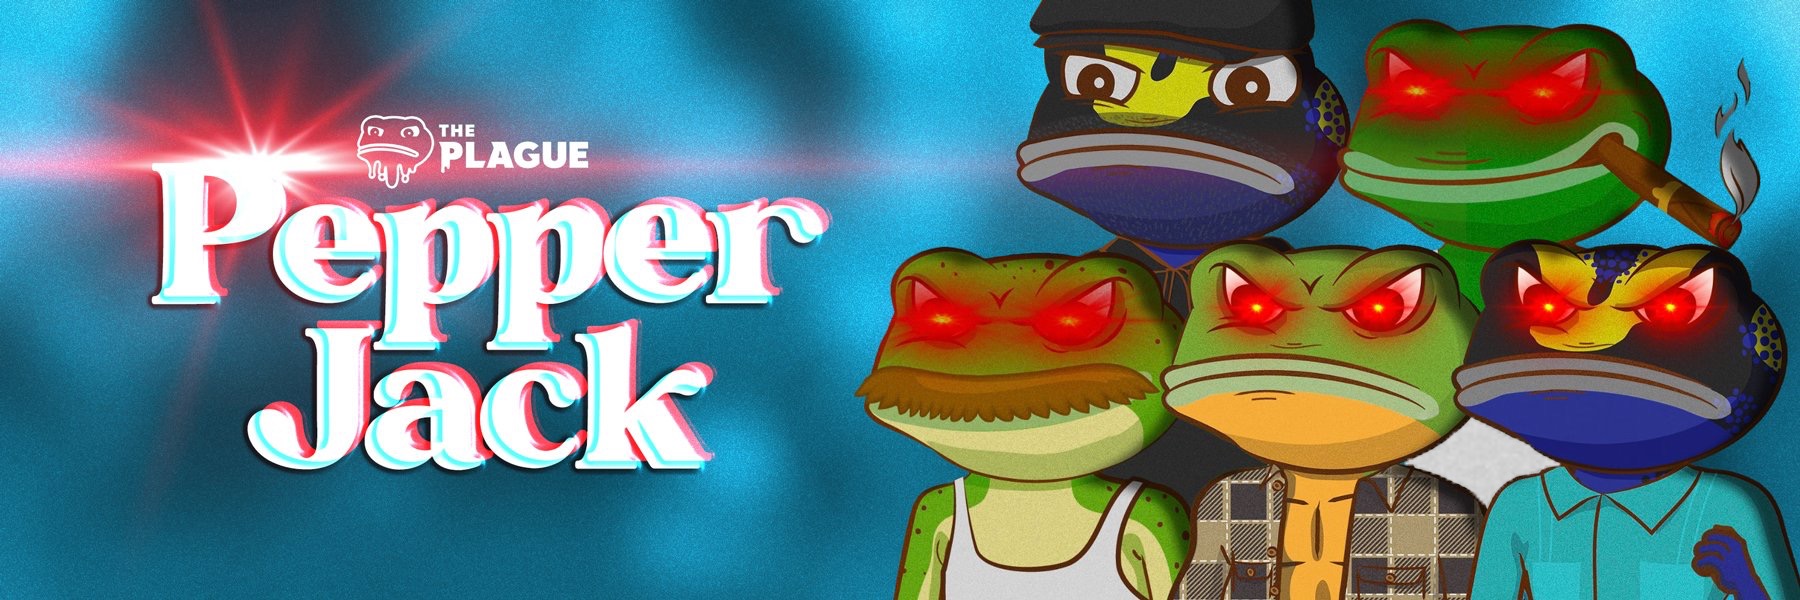 Pepperjack_eth banner